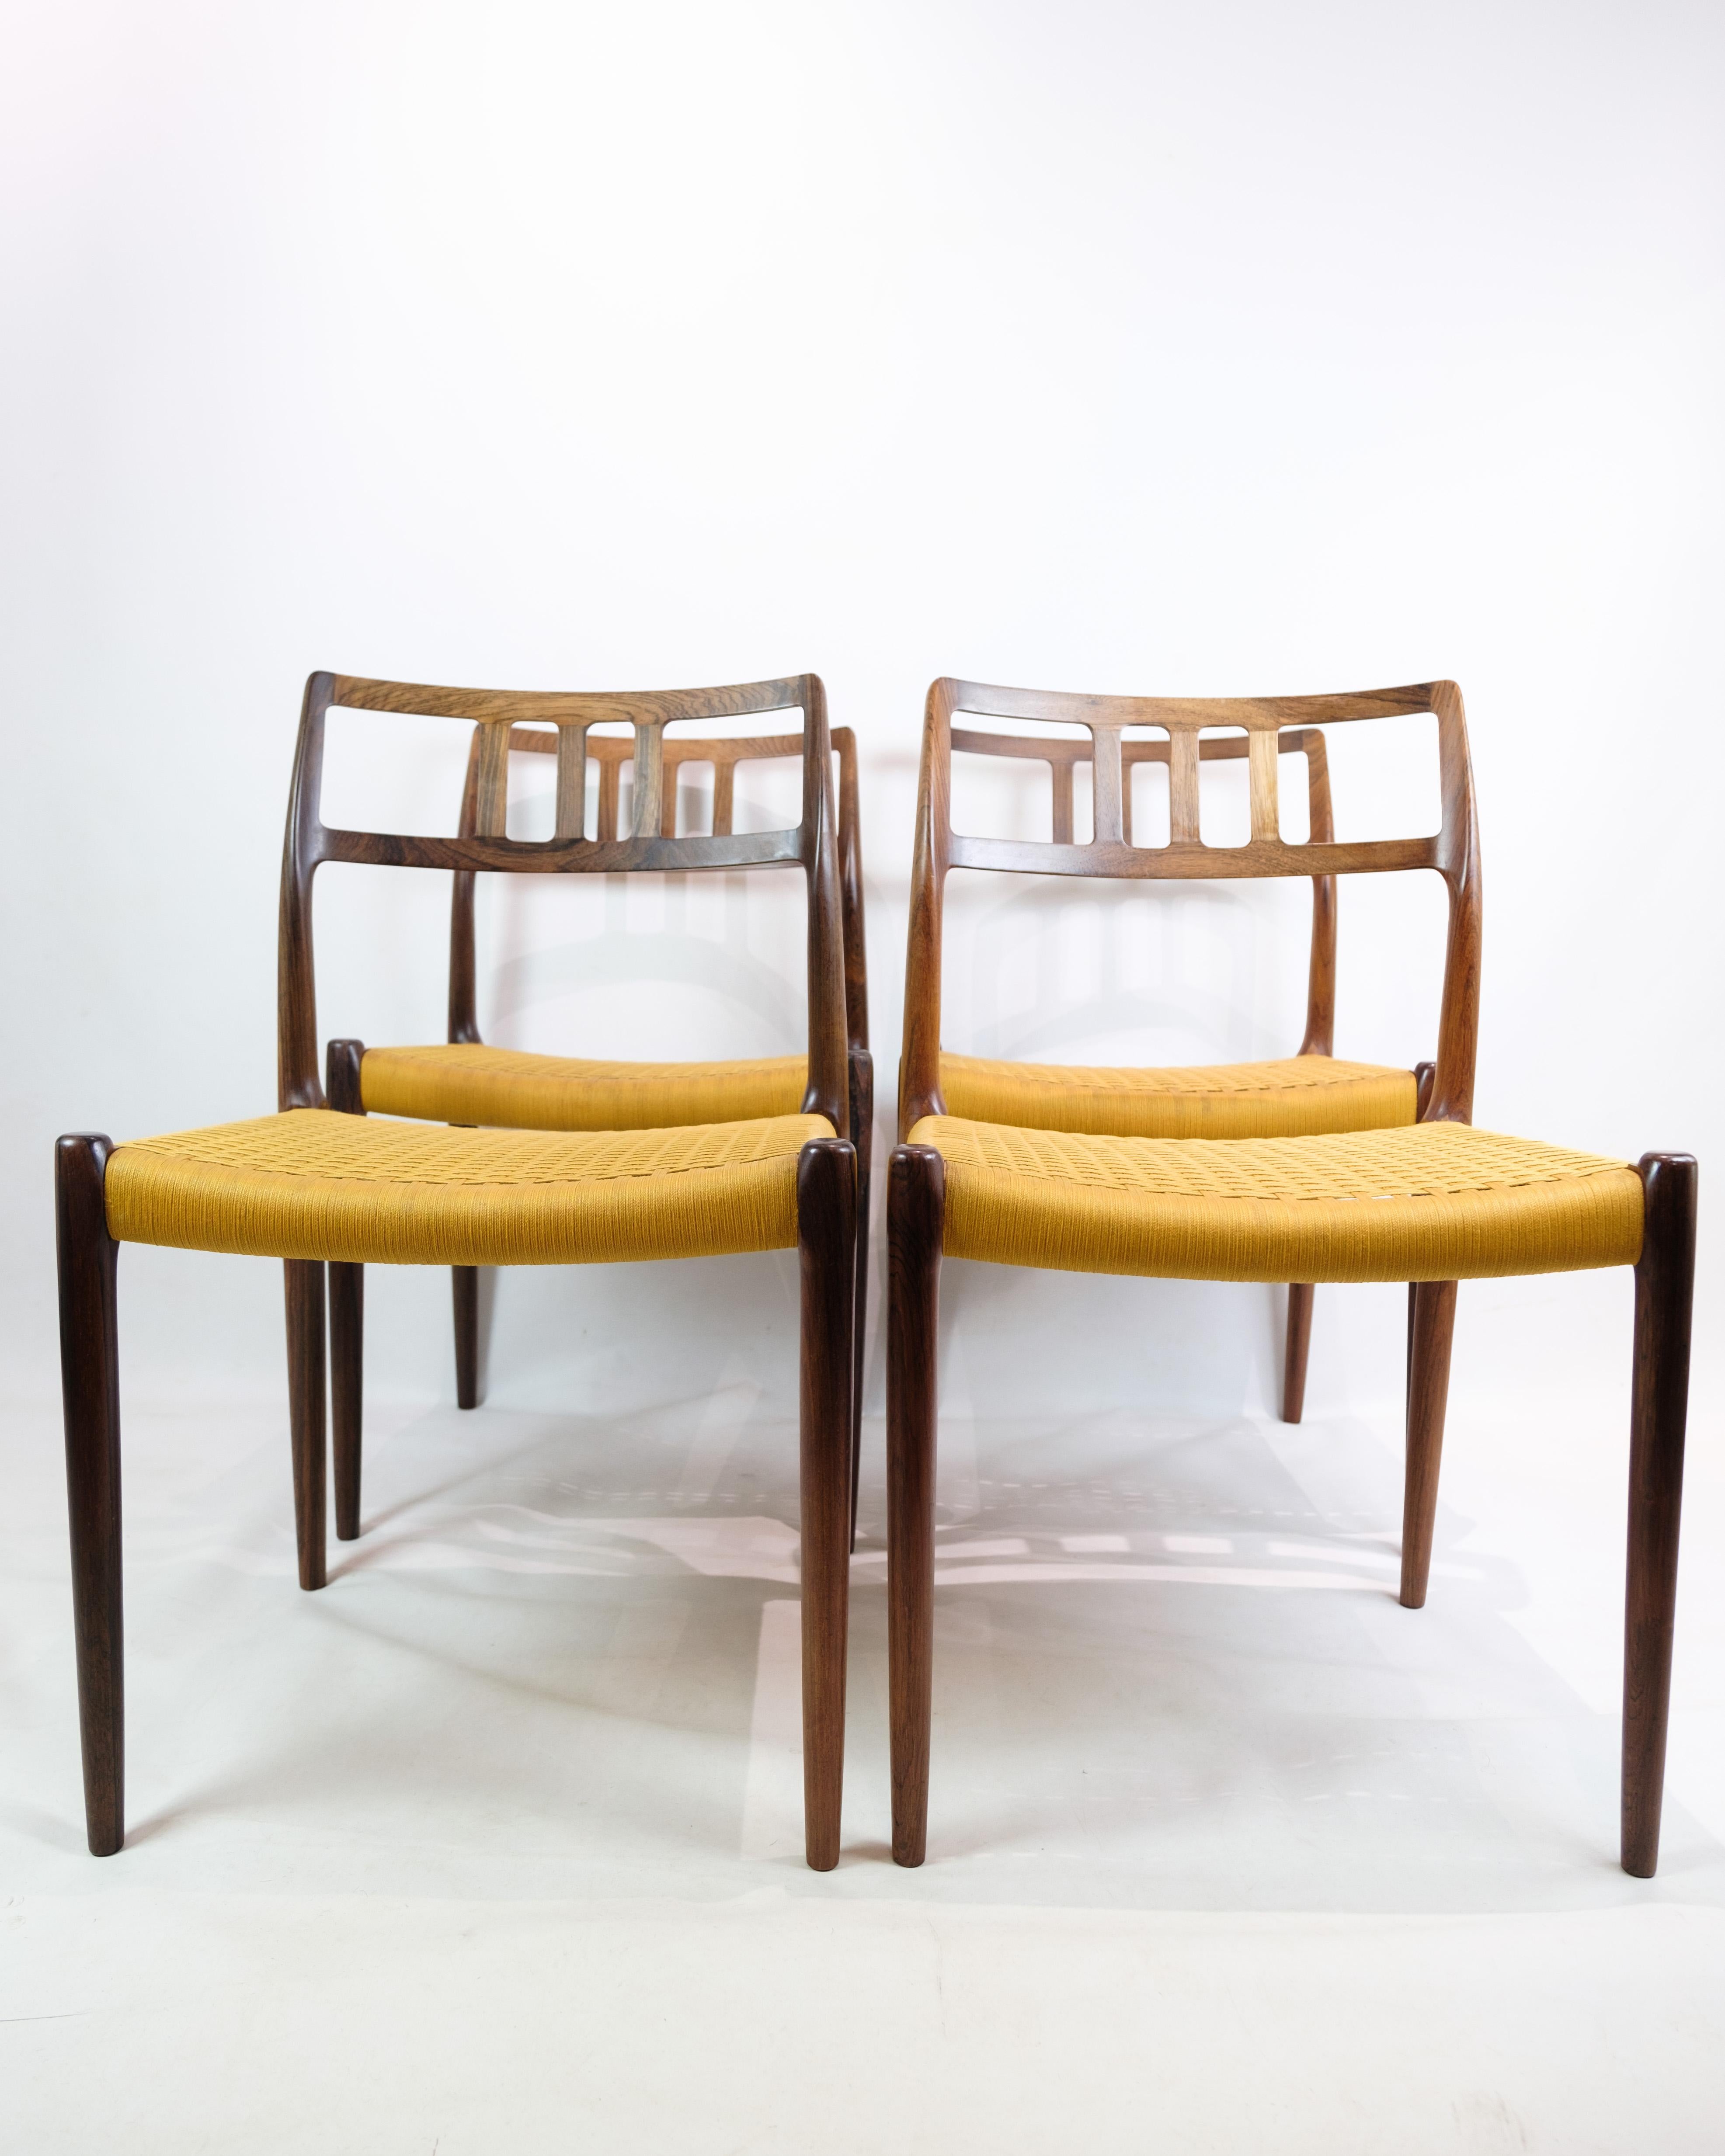 Satz von vier Esszimmerstühlen, Modell 79, entworfen von Niels O. Møller und hergestellt von J.L. Møller Møbelfabrik um 1960. Diese Stühle sind eine Ikone in der Geschichte des dänischen Möbeldesigns, wo Niels O. Møller für seine handwerklichen und